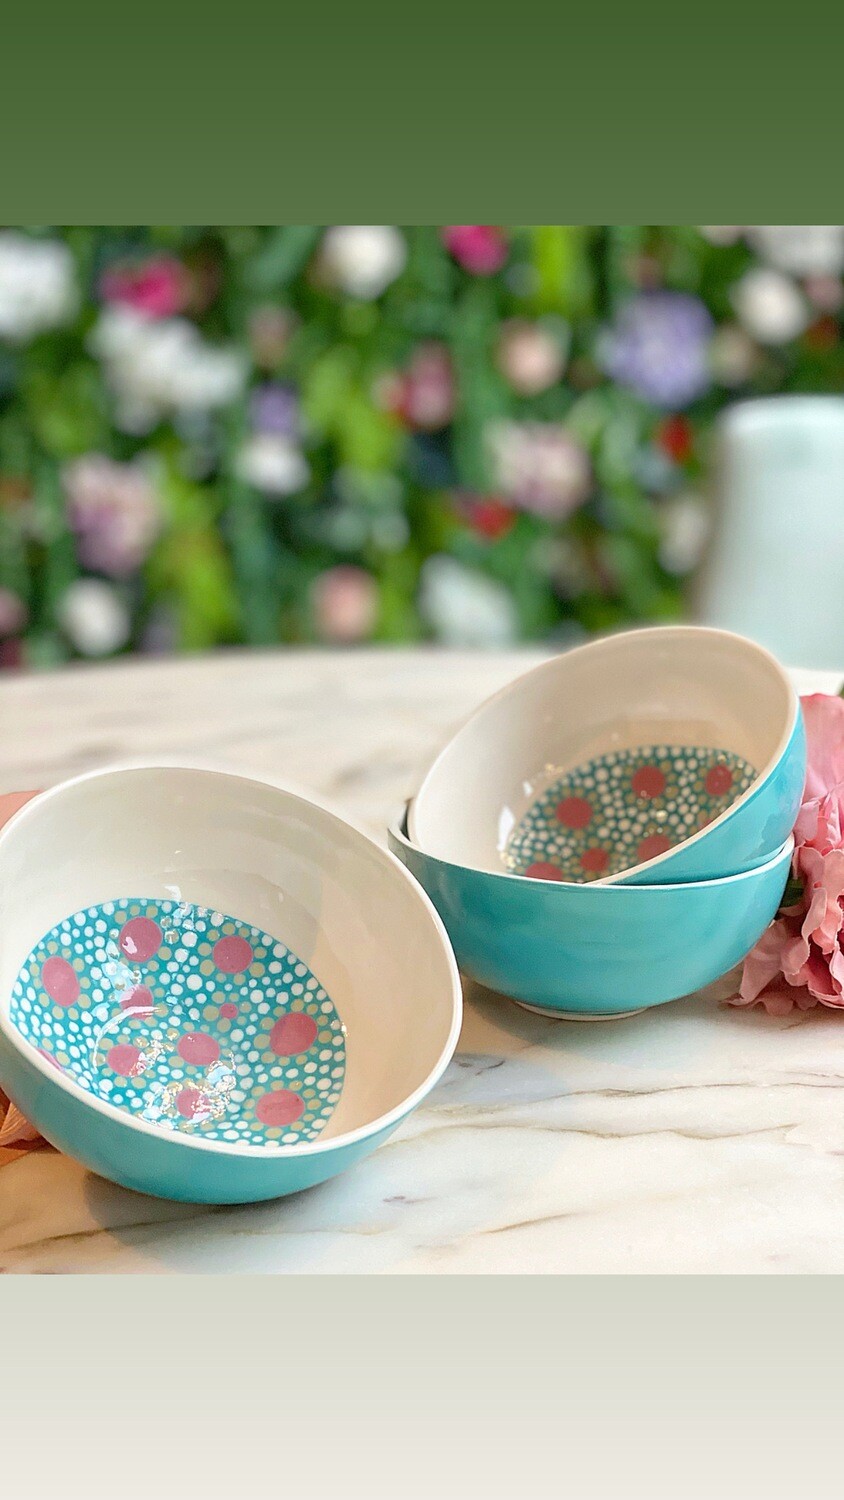 Handmade Ceramic Treat Bowl - Chocoa Mint